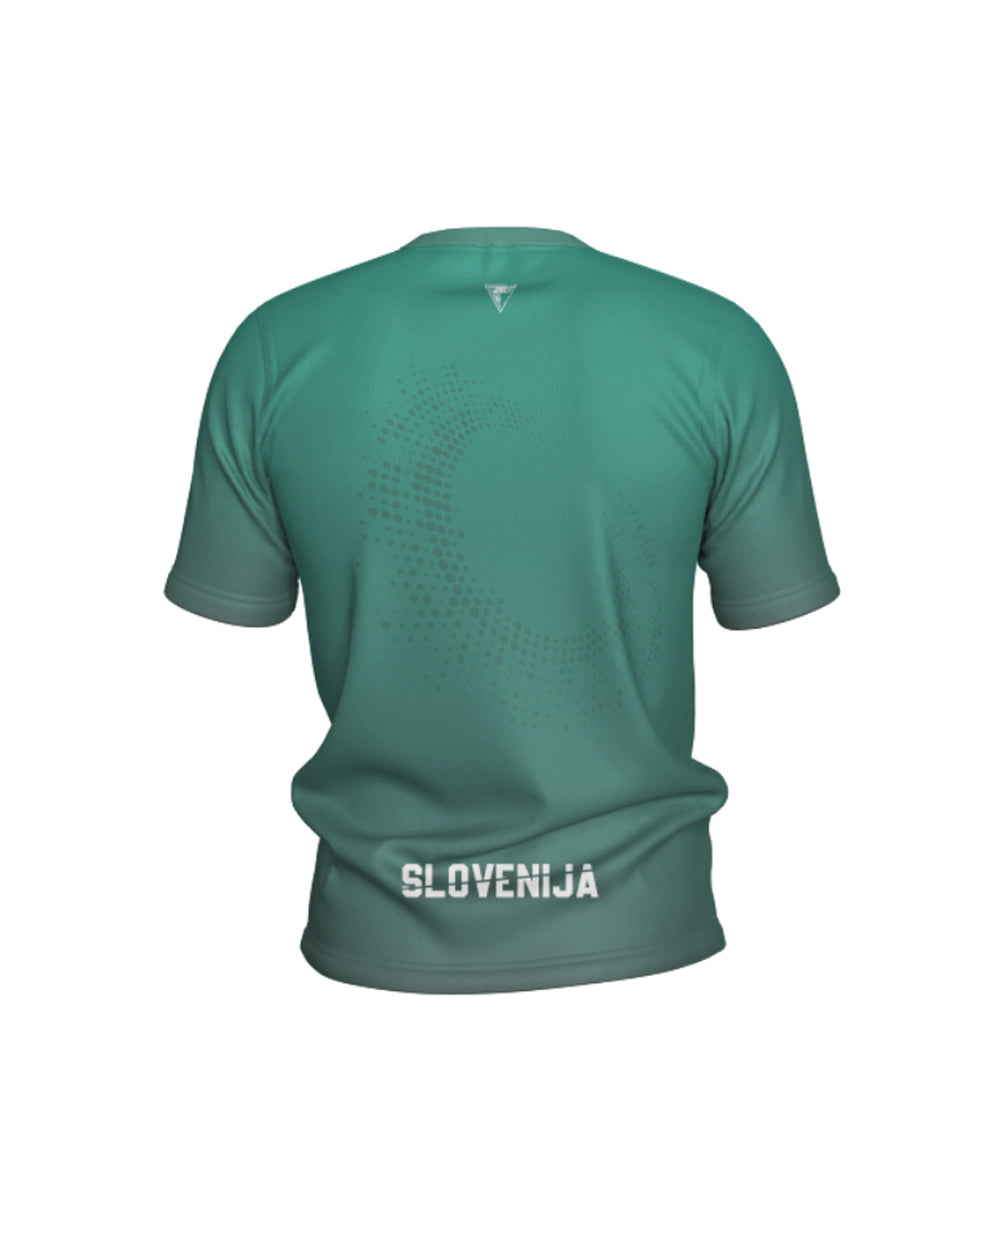 Otroška športna majica Slovenija Green (unisex)